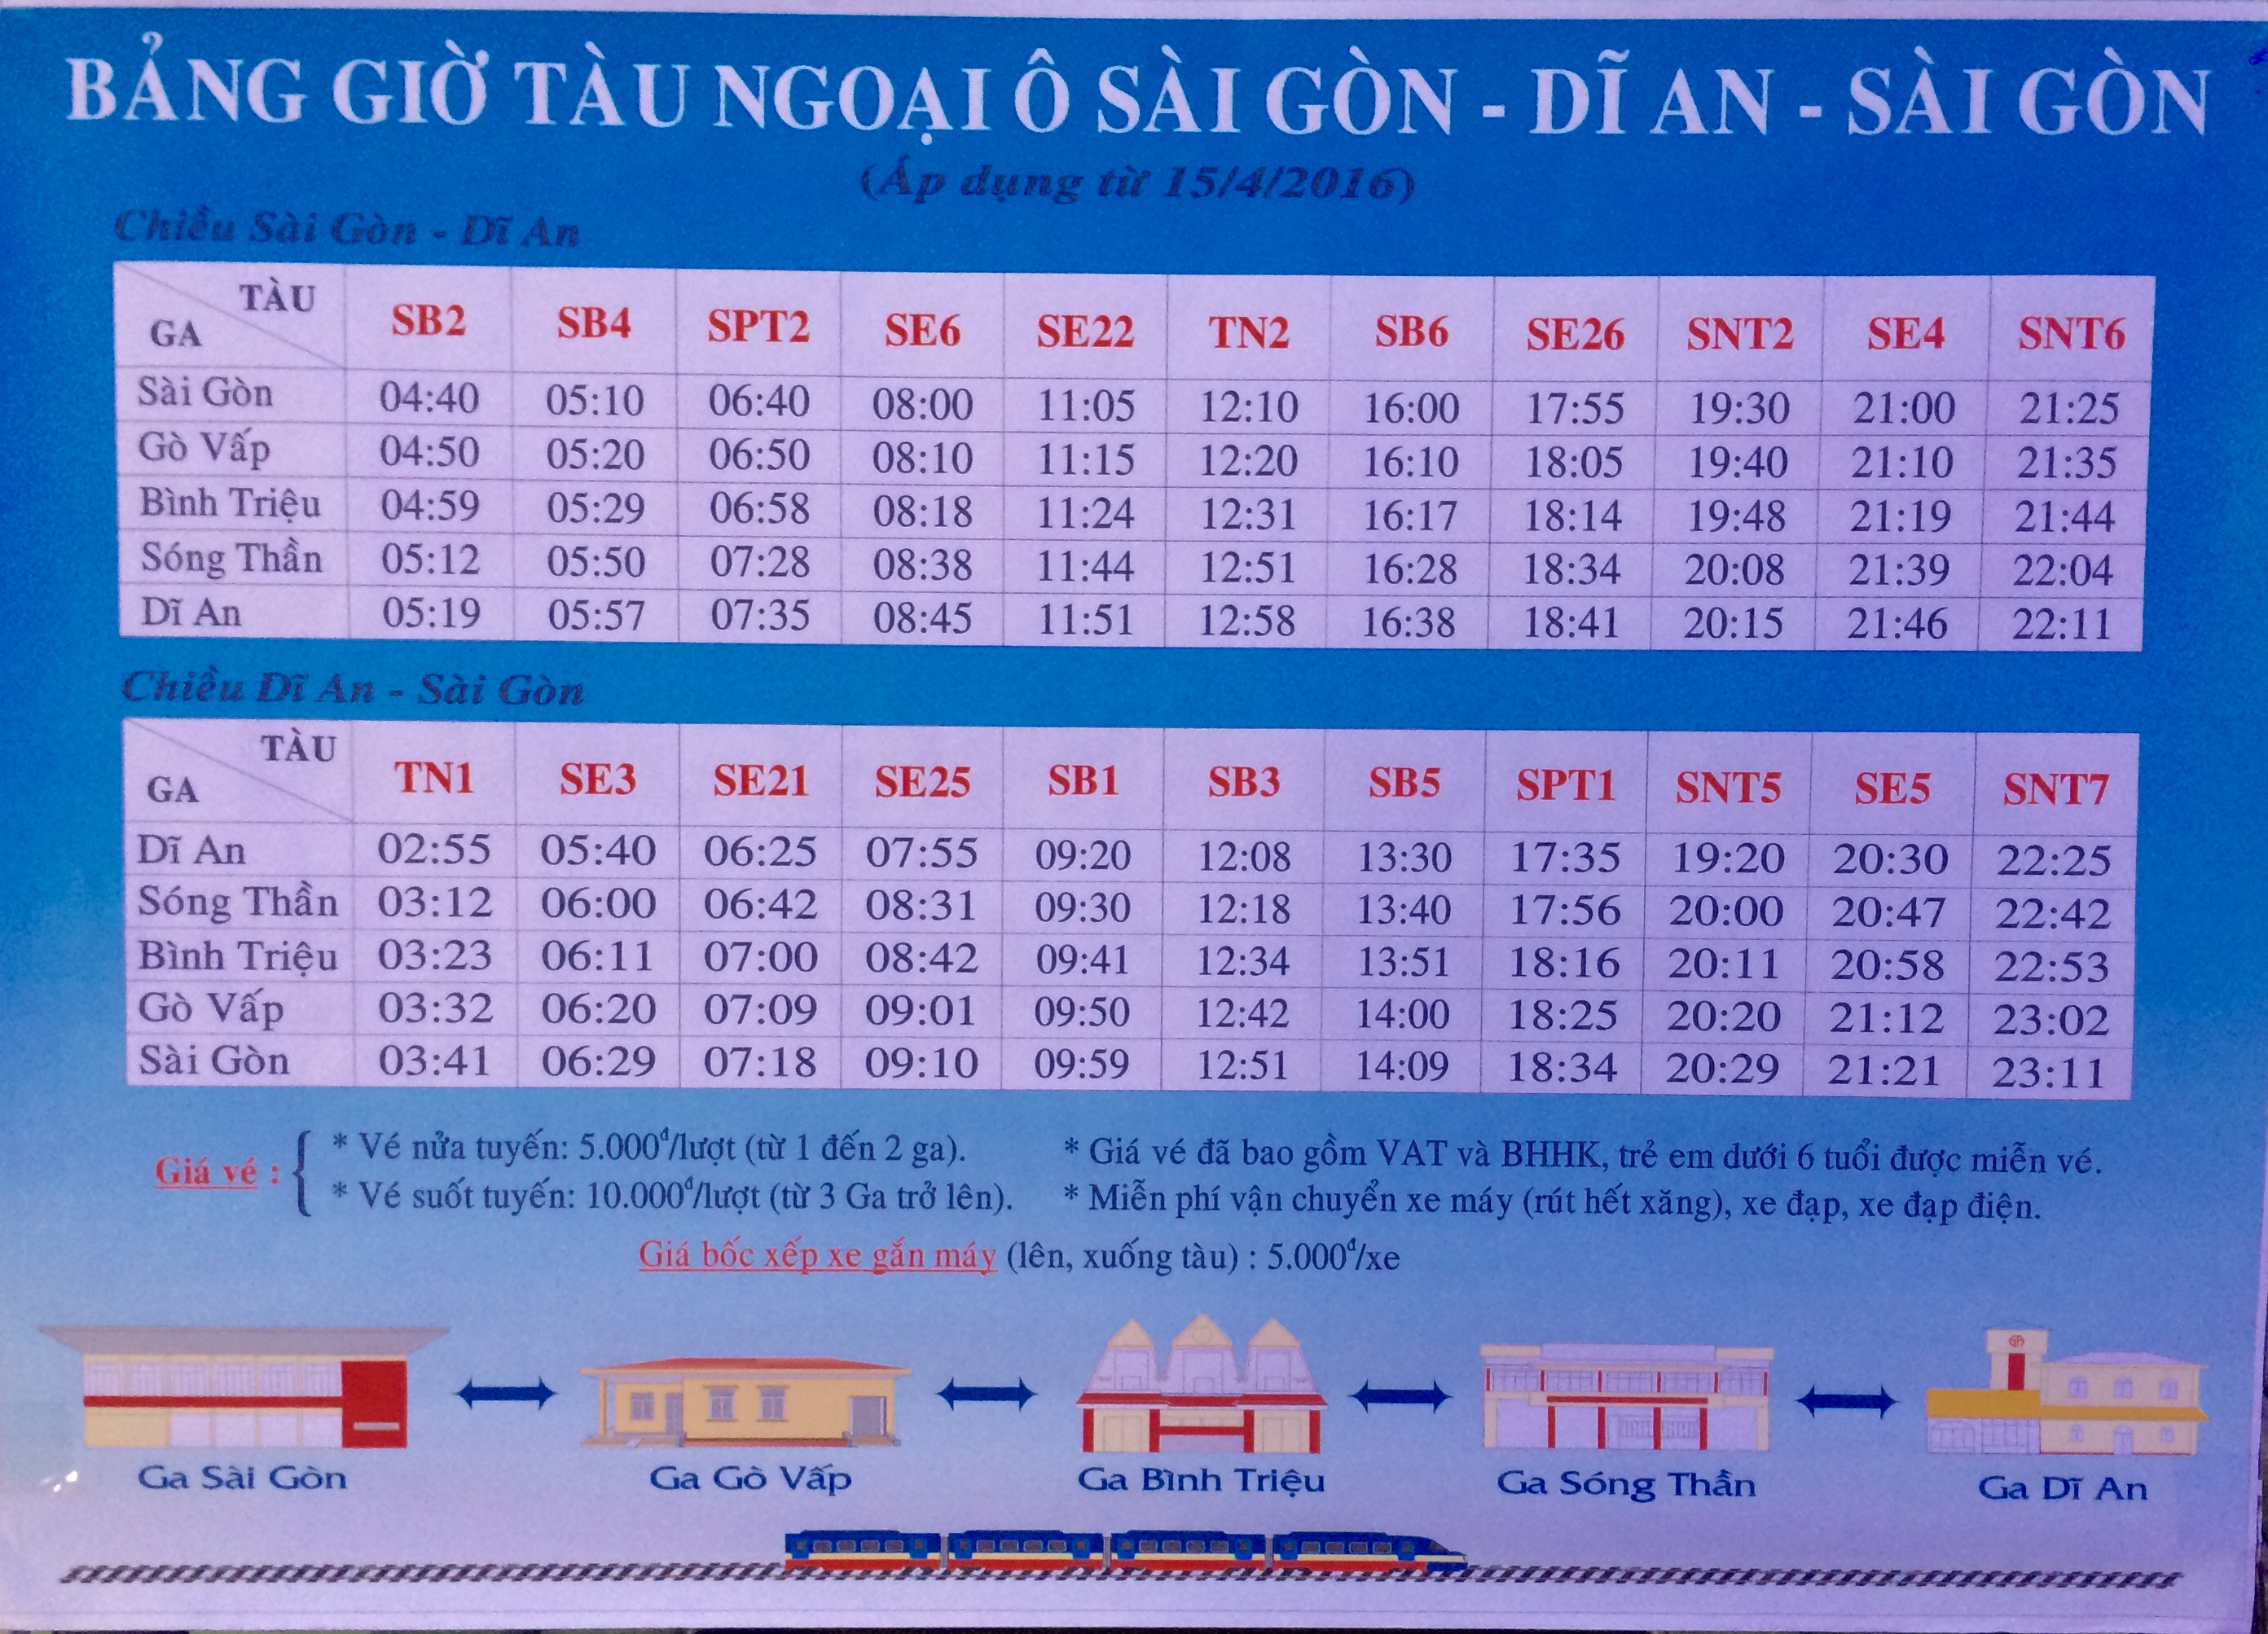 Lịch chạy tàu tuyến ngoại ô của ga Sài Gòn